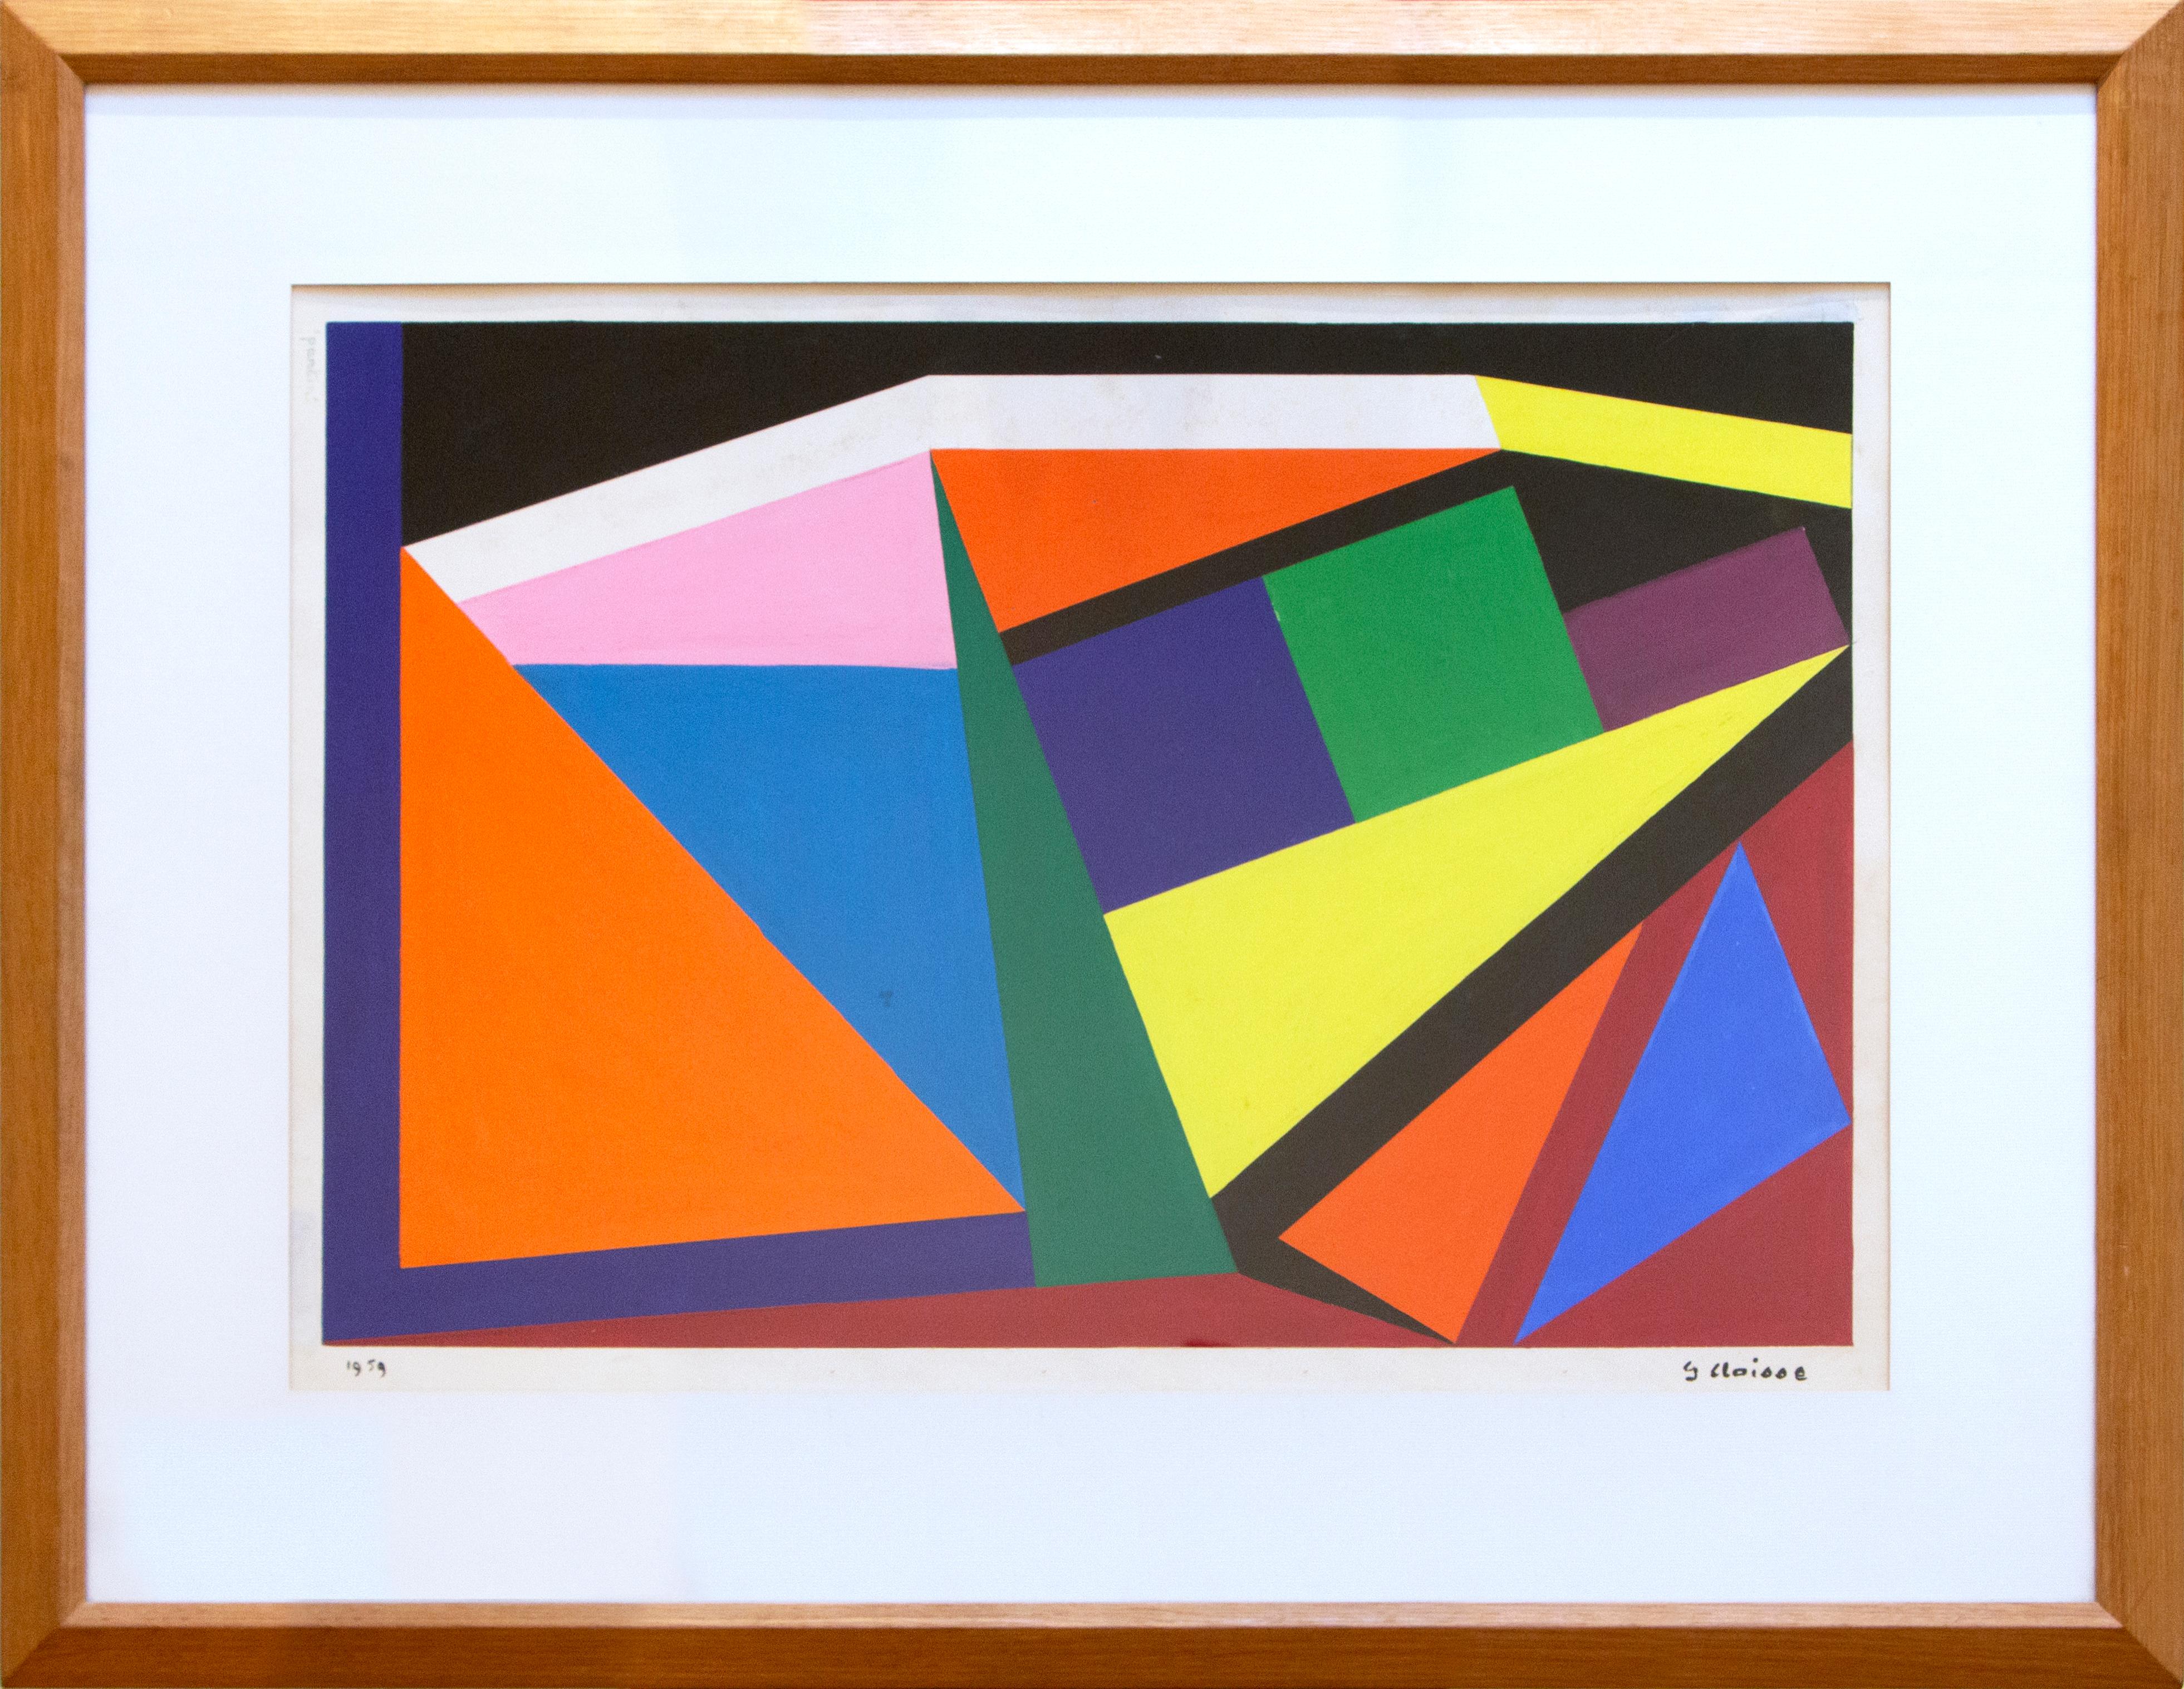 Geneviève Claisse Abstract Painting - "Composition" by Geneviéve Claisse, Gouache, 1959